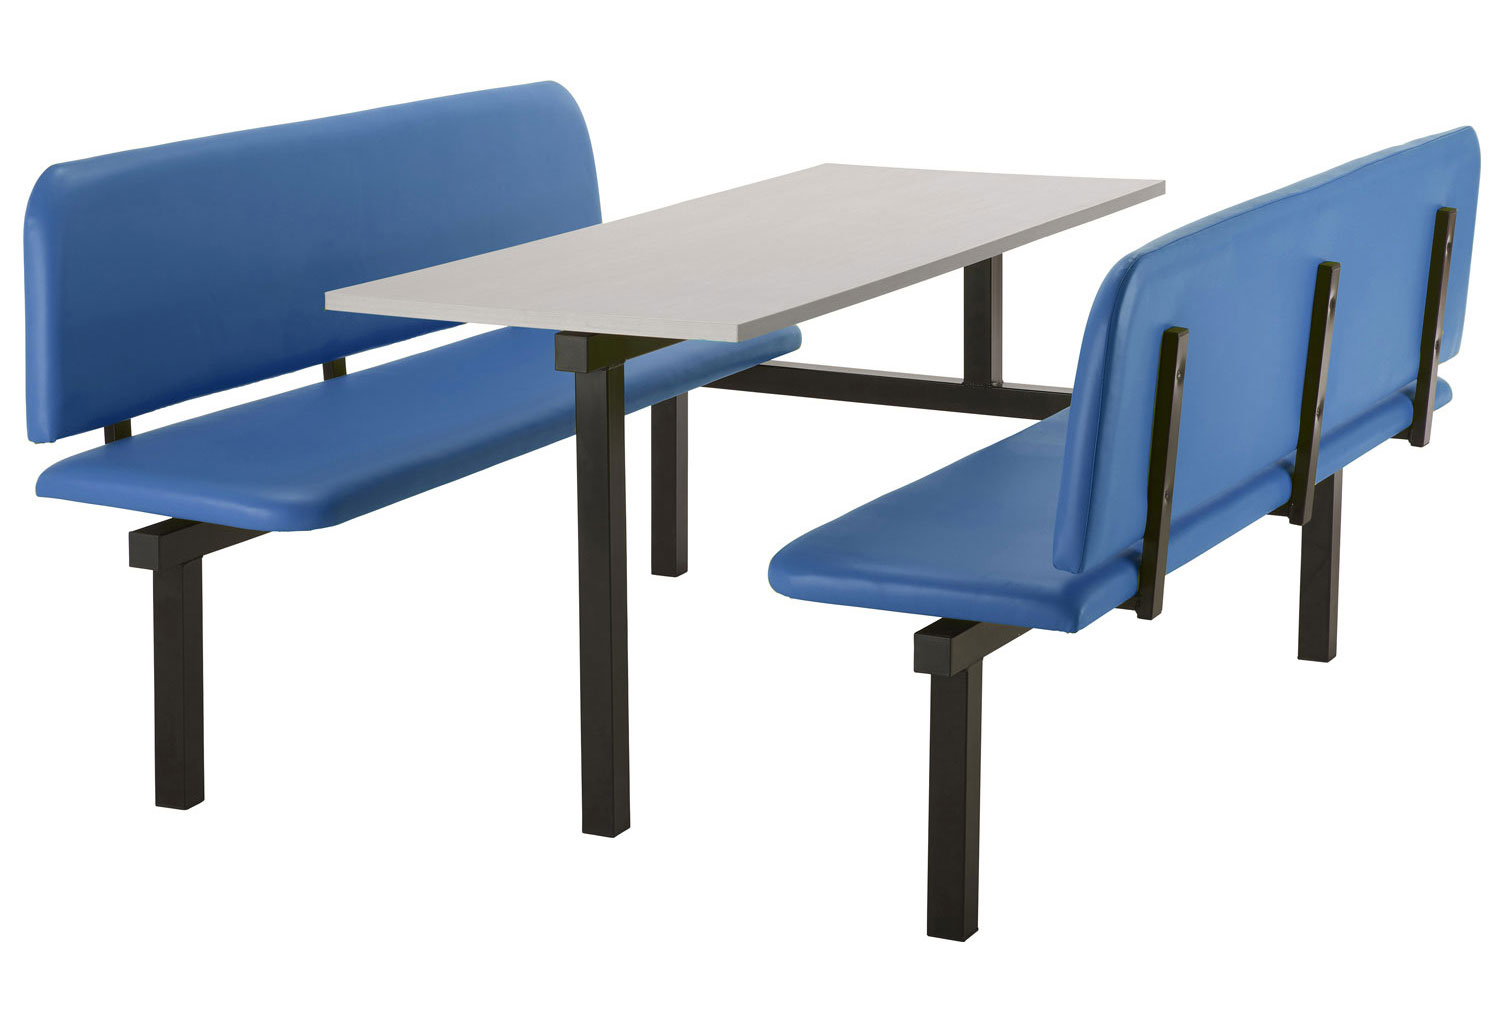 Mellon 6 Seater Canteen Unit (Single Entry), Silver Frame, Grey Table Top, Blue Seats